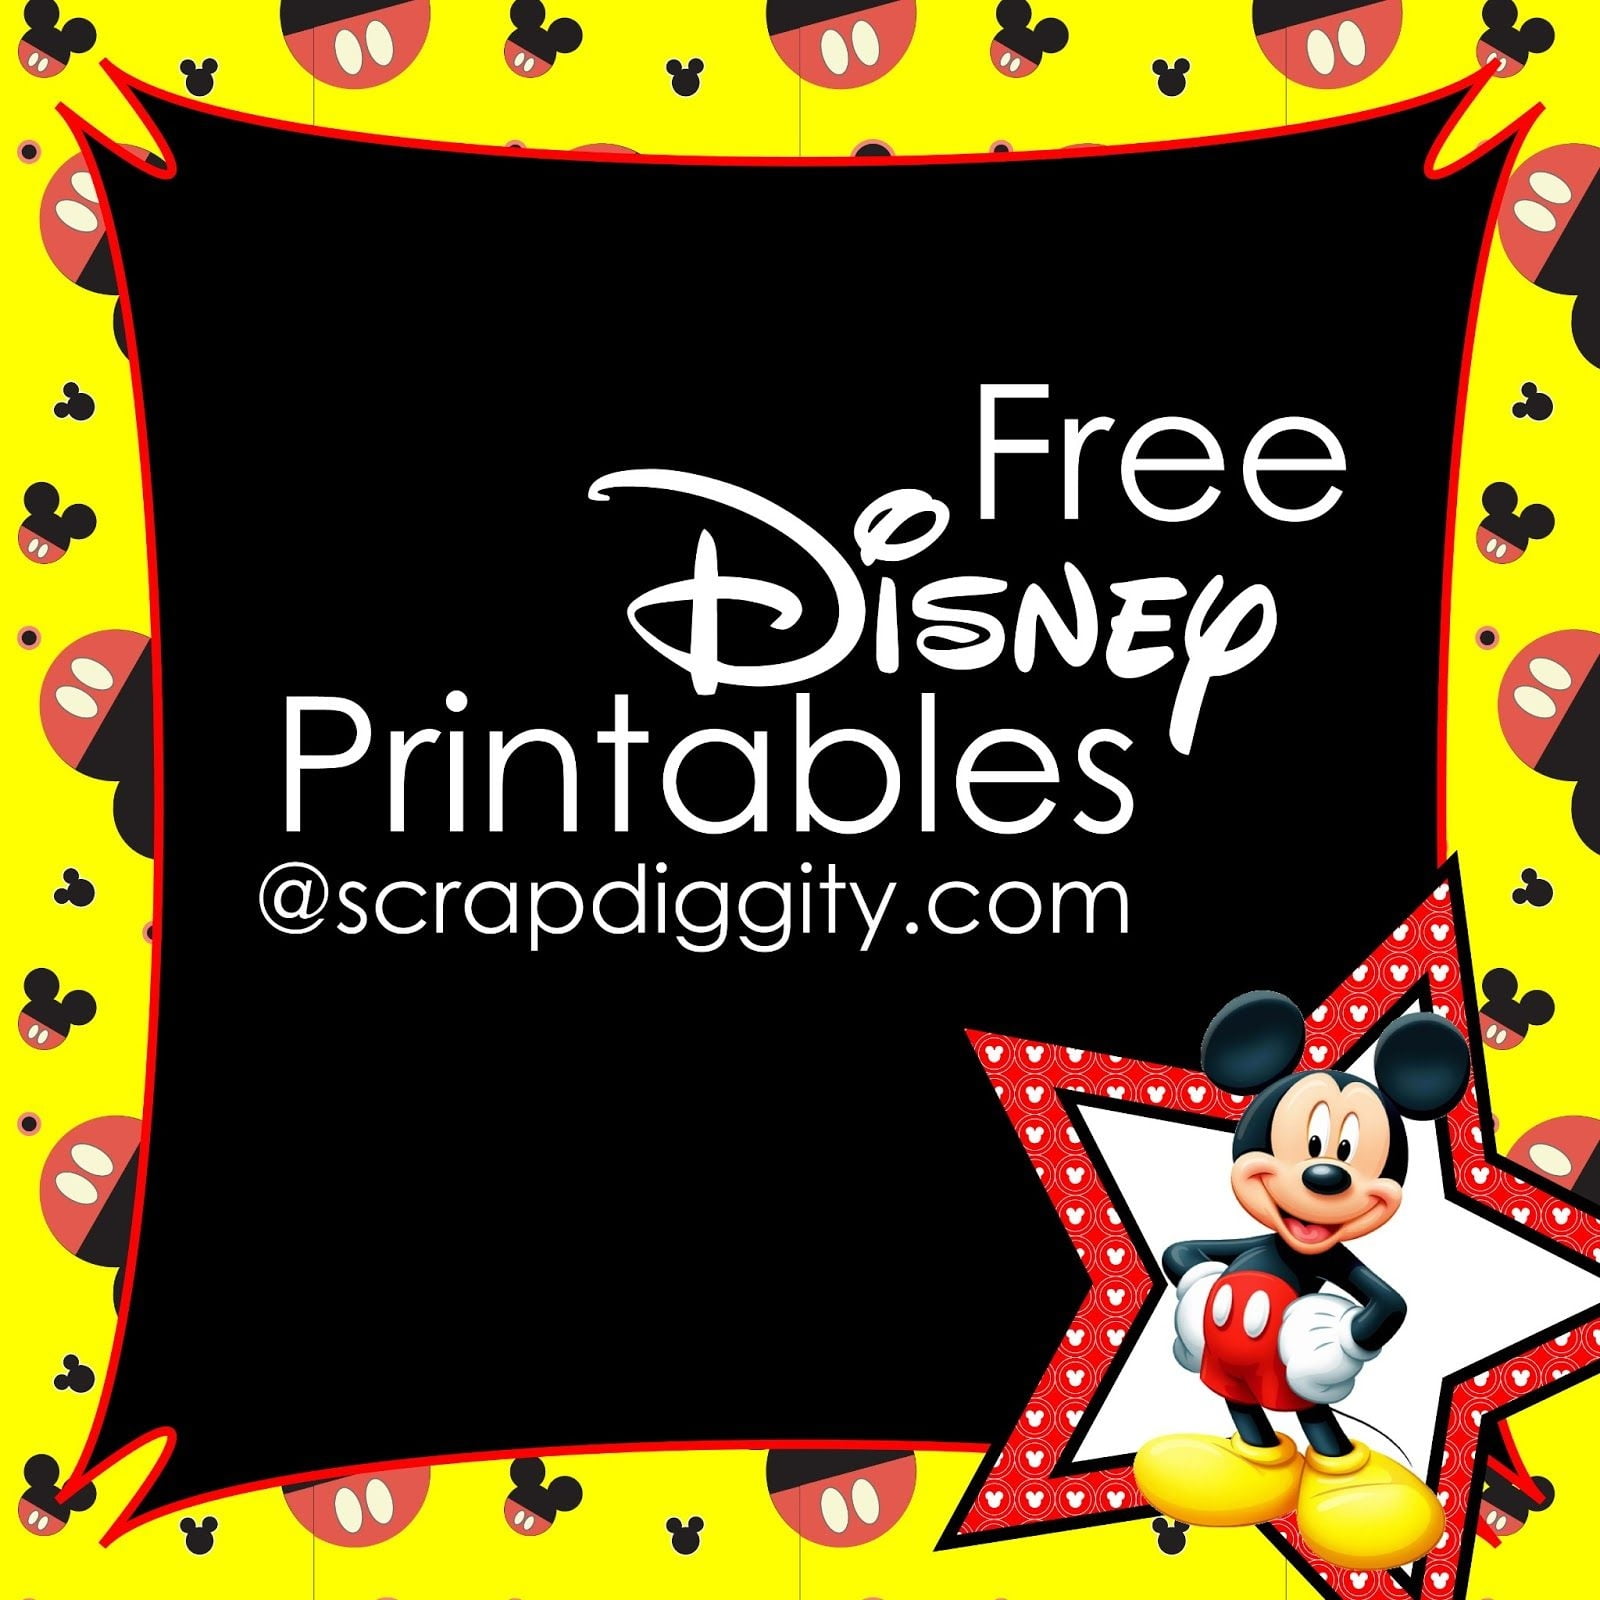 Scrapdiggity Free Disney Printables Disney Scrapbook Disney Scrapbooking Layouts Disney Scrapbook Pages